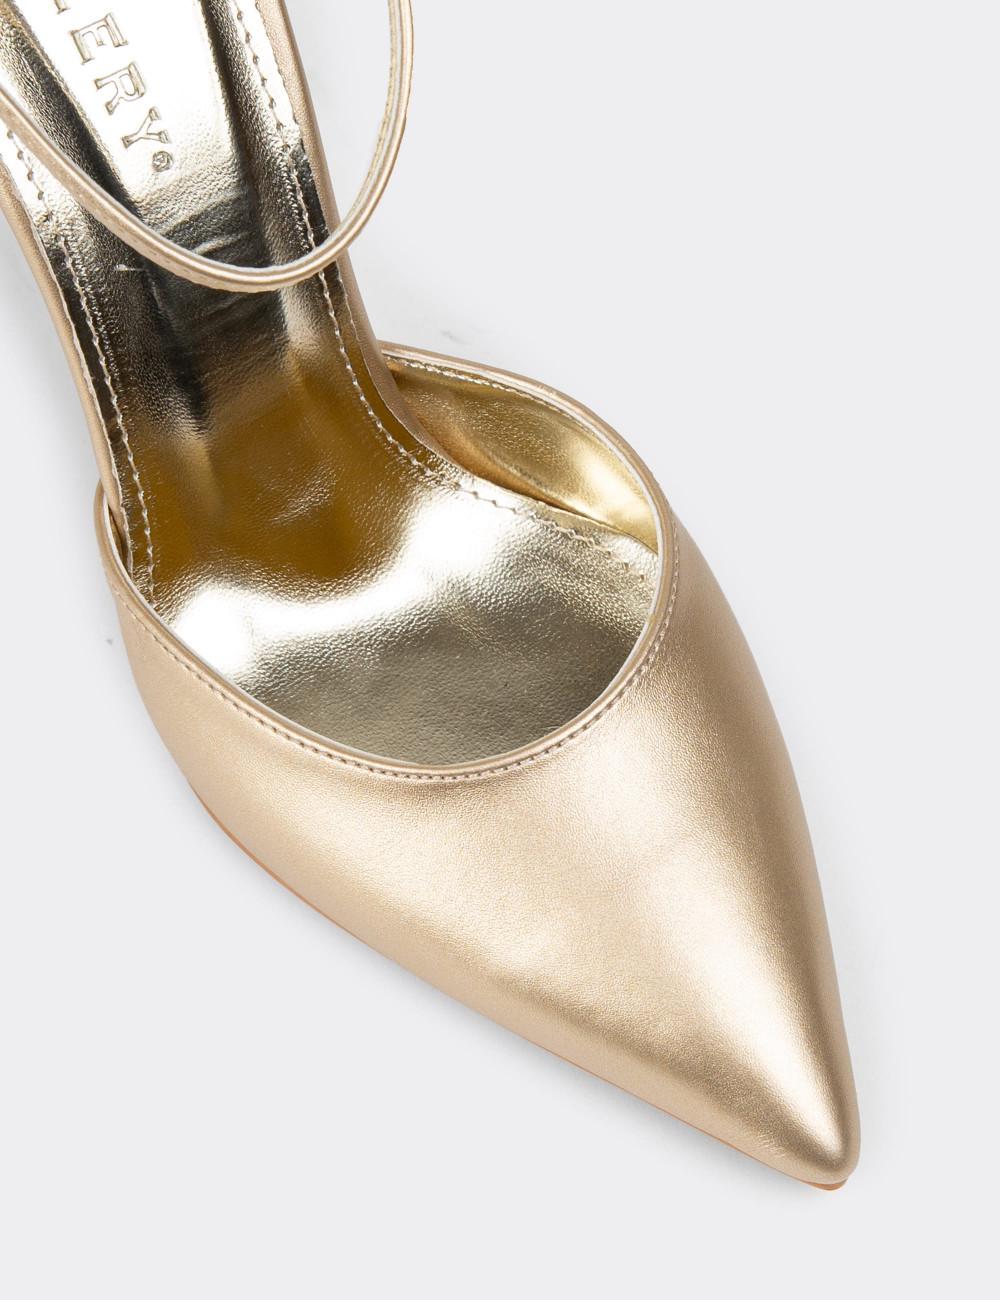 Hakiki Deri Altın Rengi Kadın Topuklu Ayakkabı - P2091ZALTM01